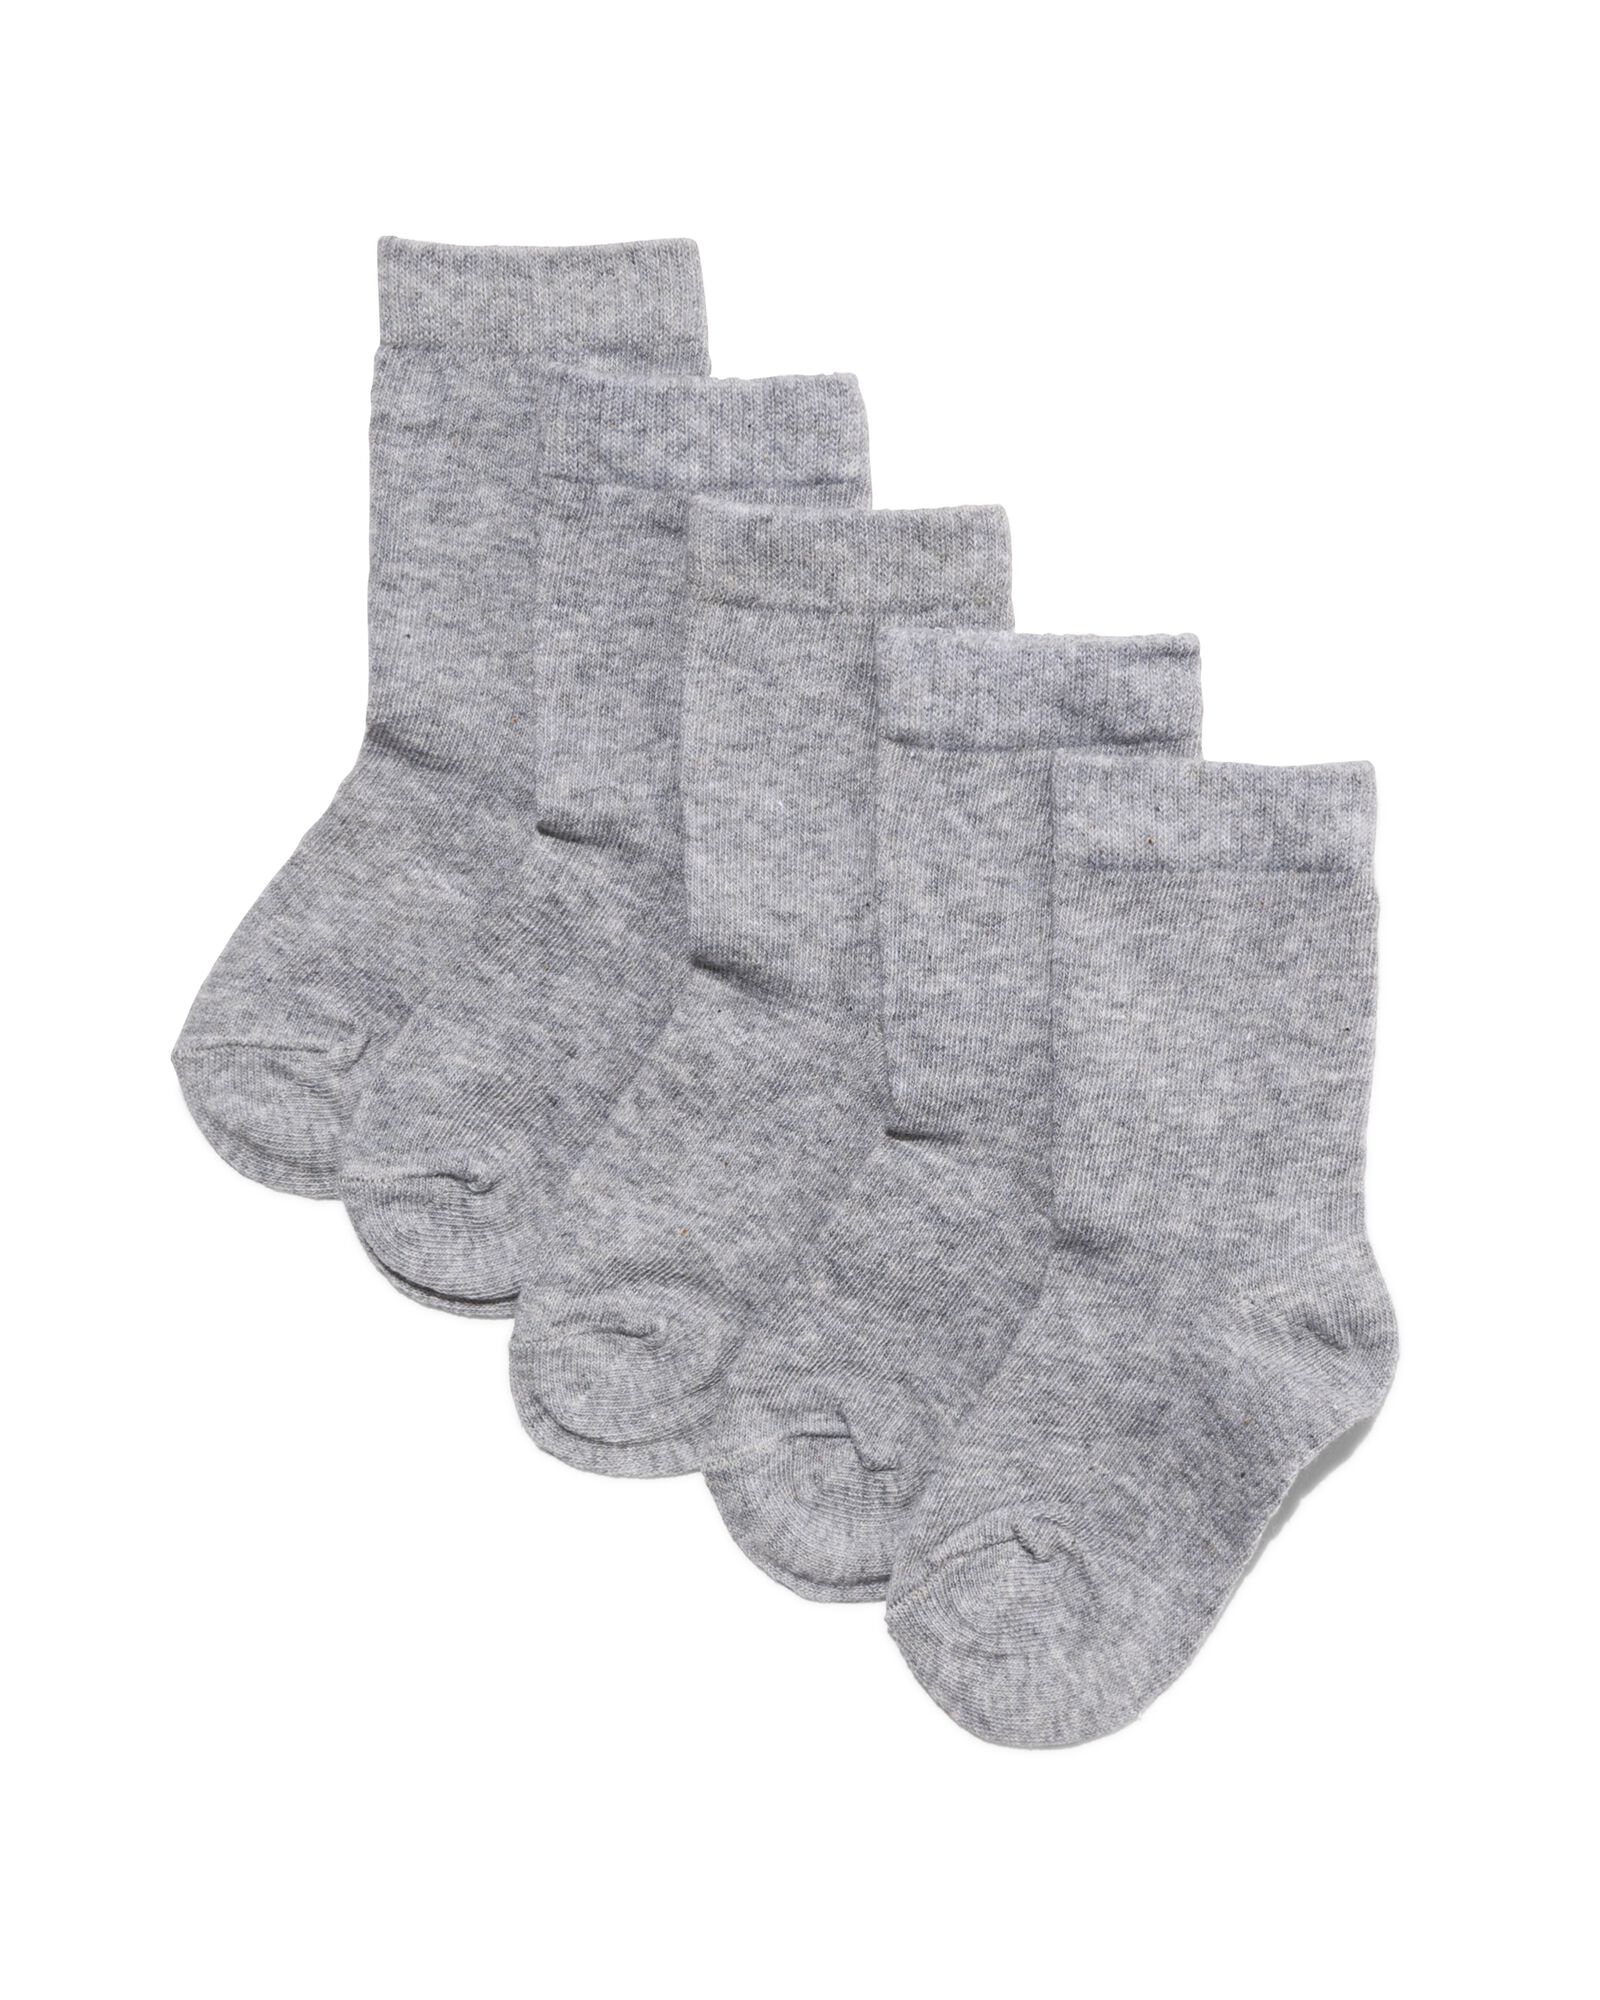 5 paires de chaussettes enfant gris chiné gris chiné - 1000001850 - HEMA